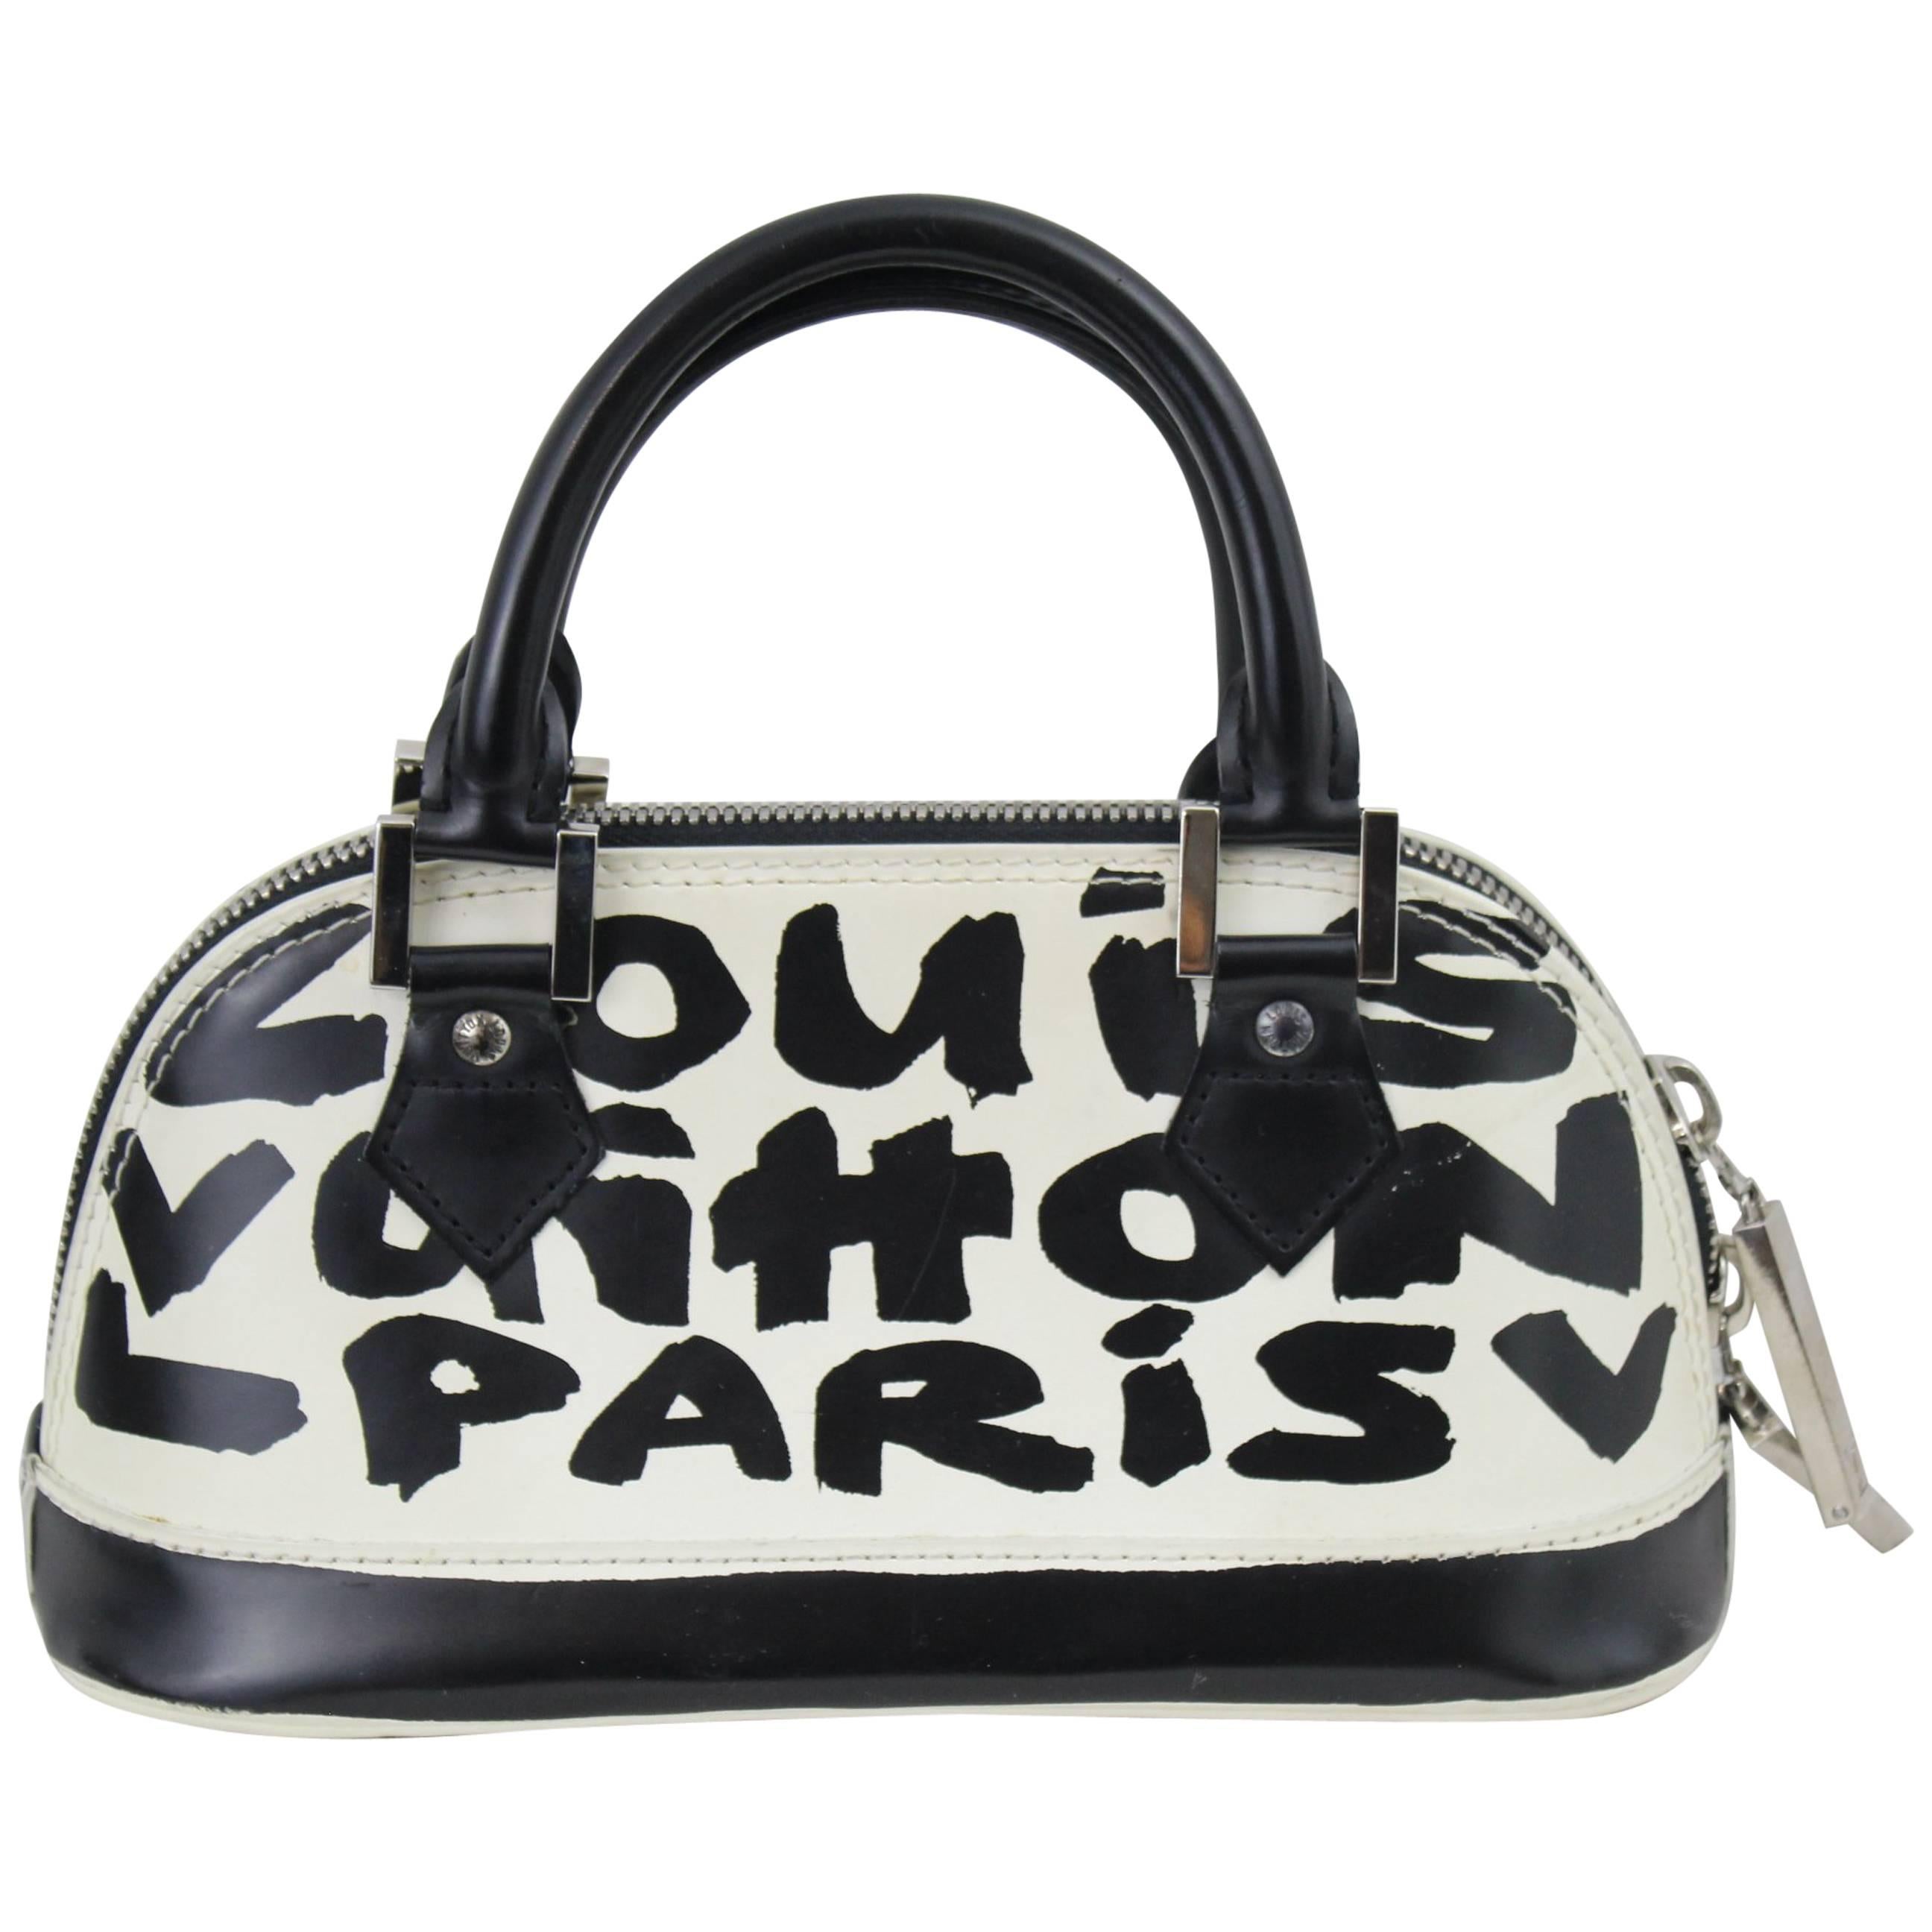 Louis Vuitton mini Alma Grafitti Bag by Stephen Sprouse & Marc Jacobs